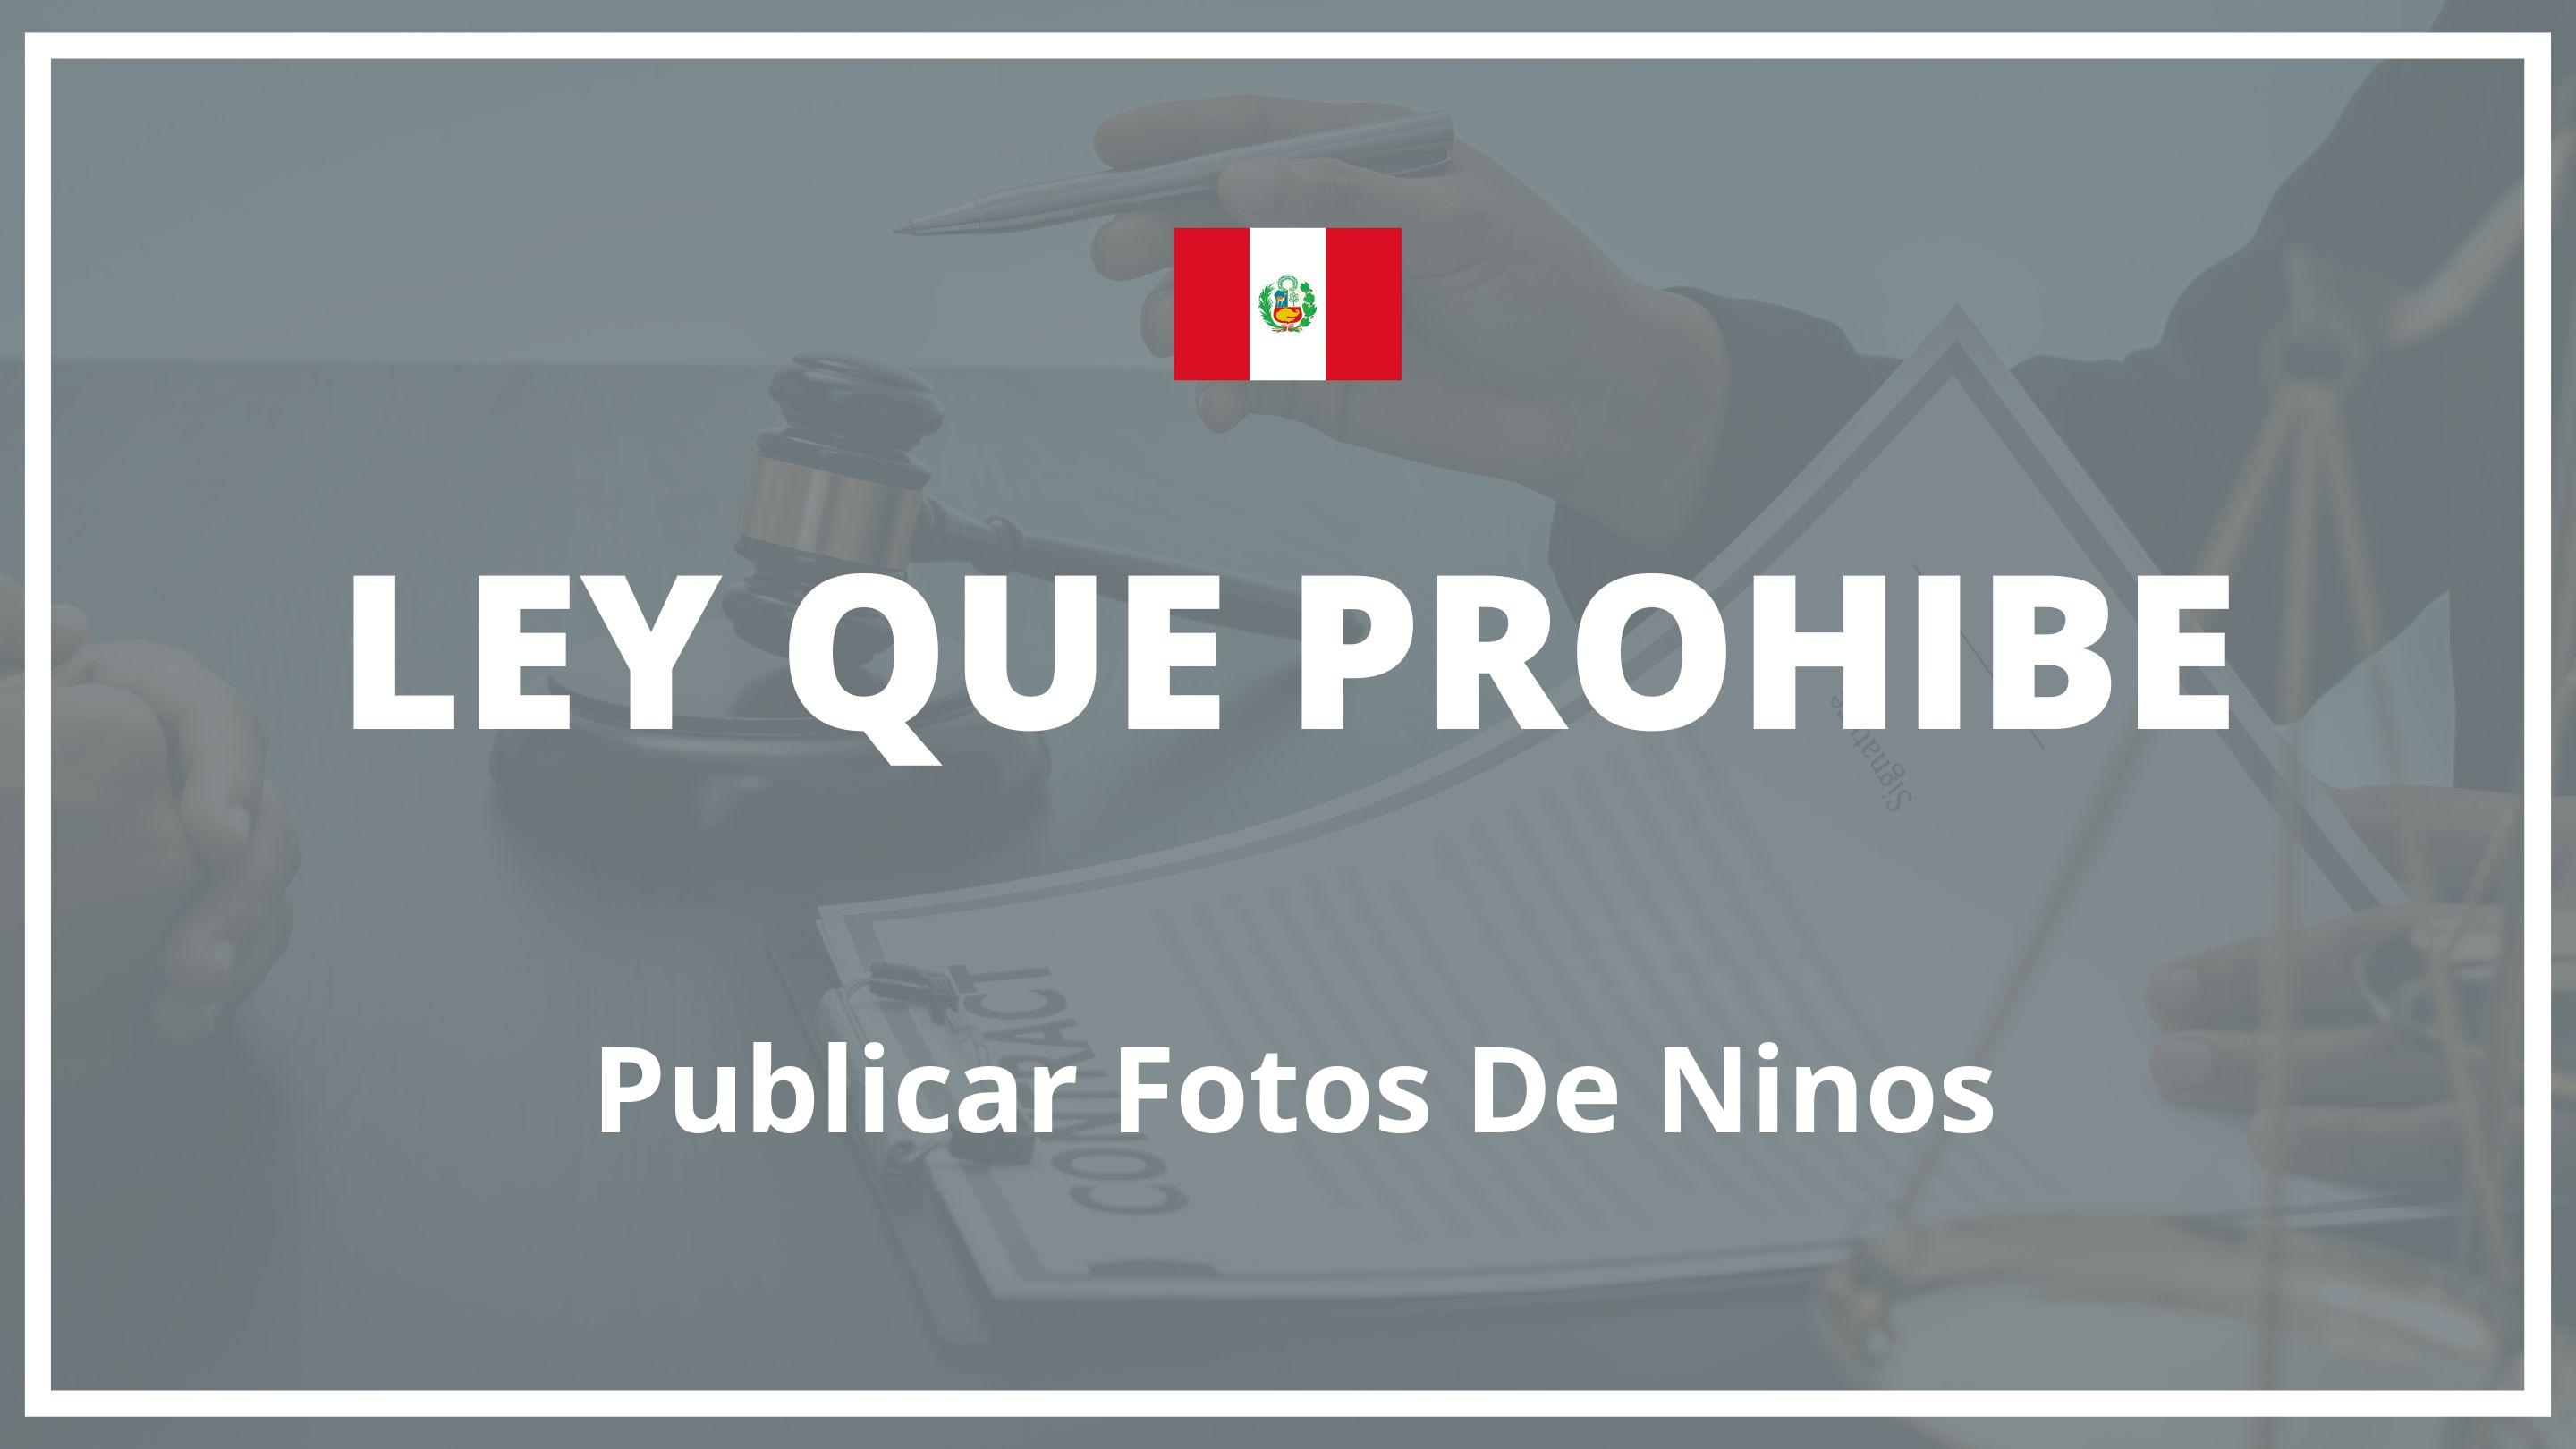 Ley que prohibe publicar fotos de niños Peru